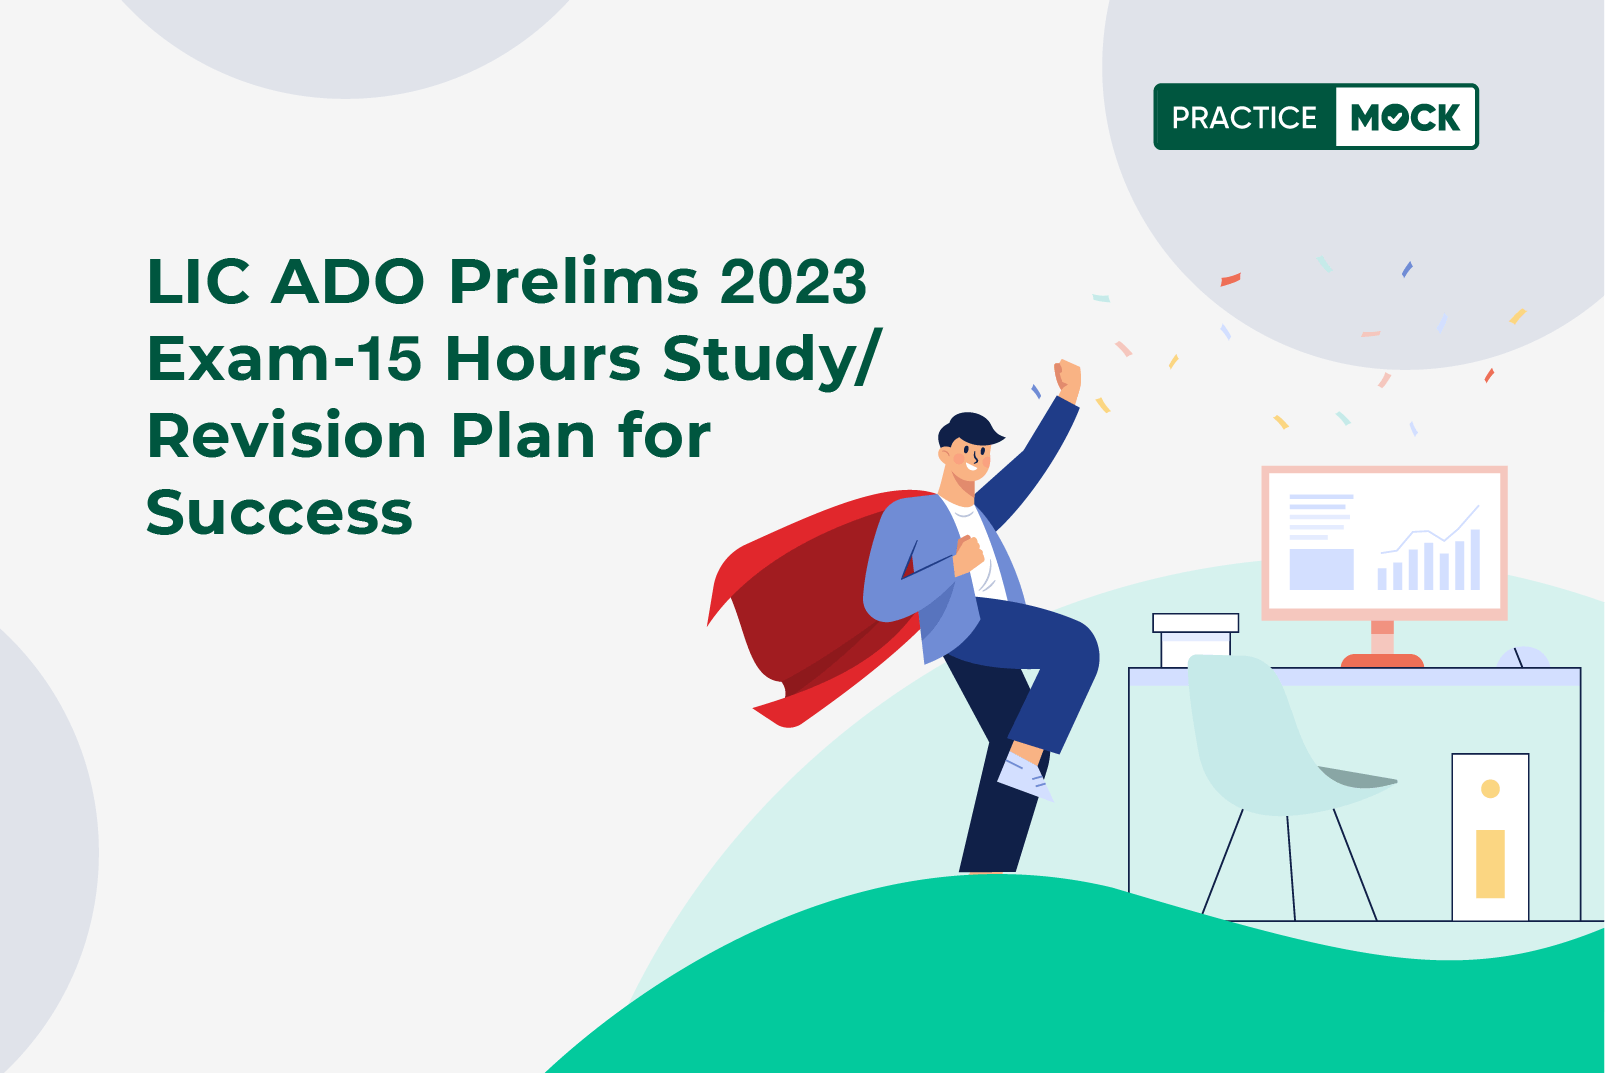 LIC ADO Prelims 2023 Exam-15 Hours Study/Revision Plan for Success